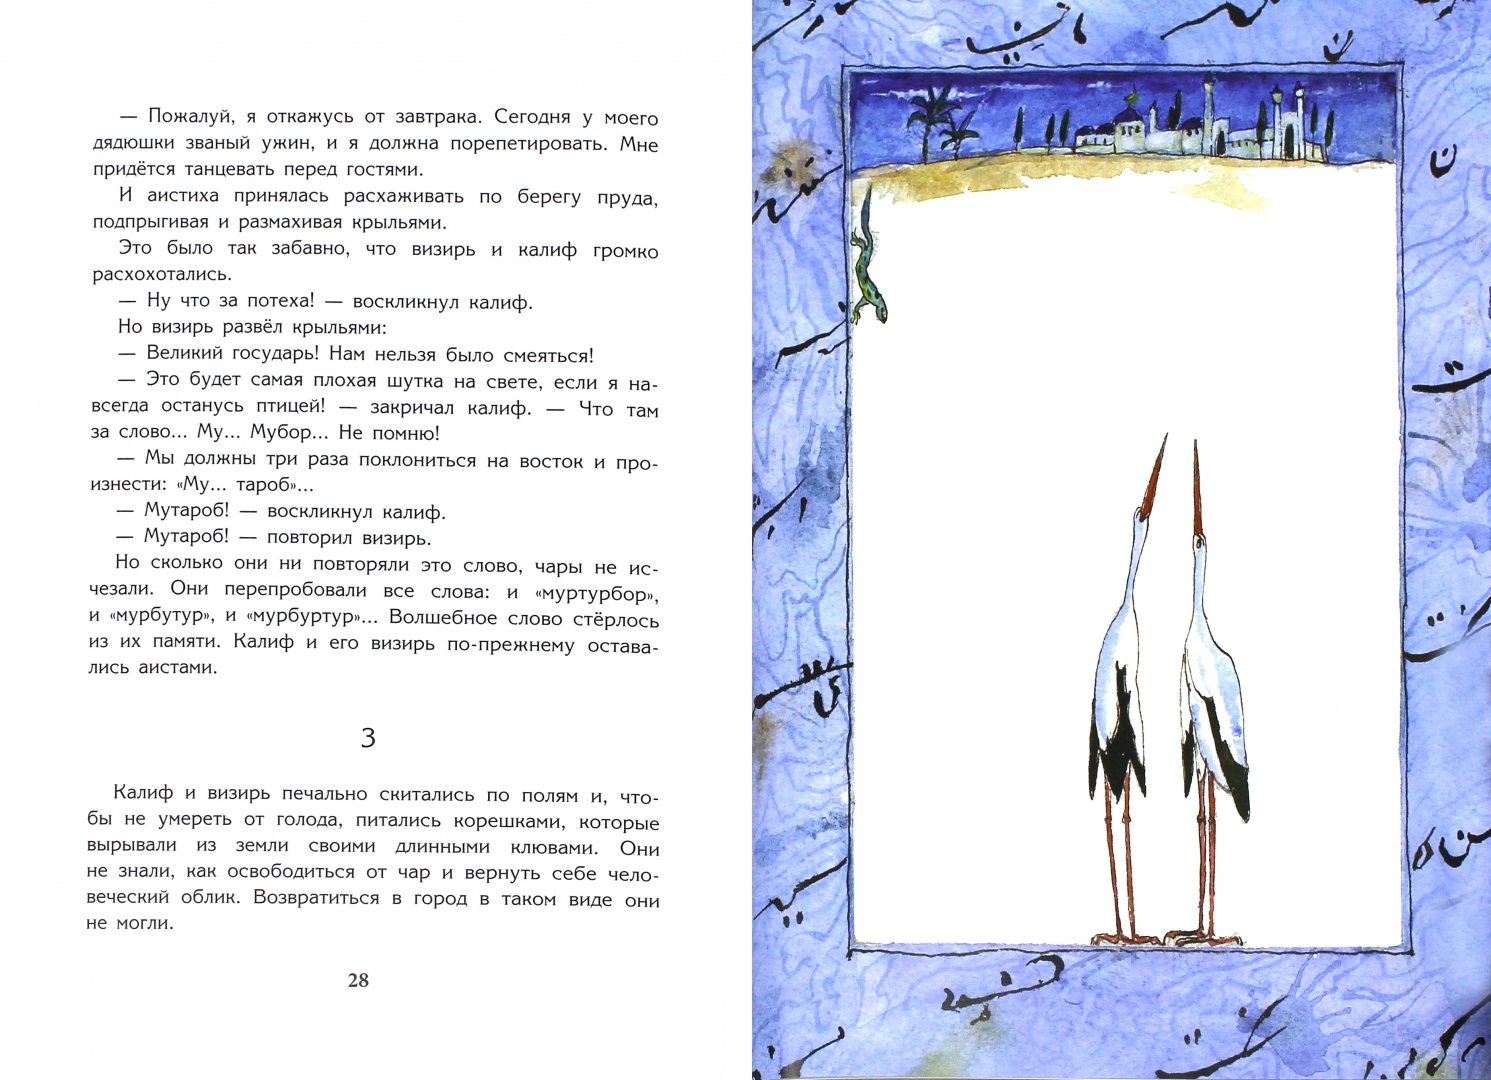 Иллюстрация 1 из 11 для Кот в сапогах. Калиф-аист - Перро, Гауф | Лабиринт - книги. Источник: Лабиринт